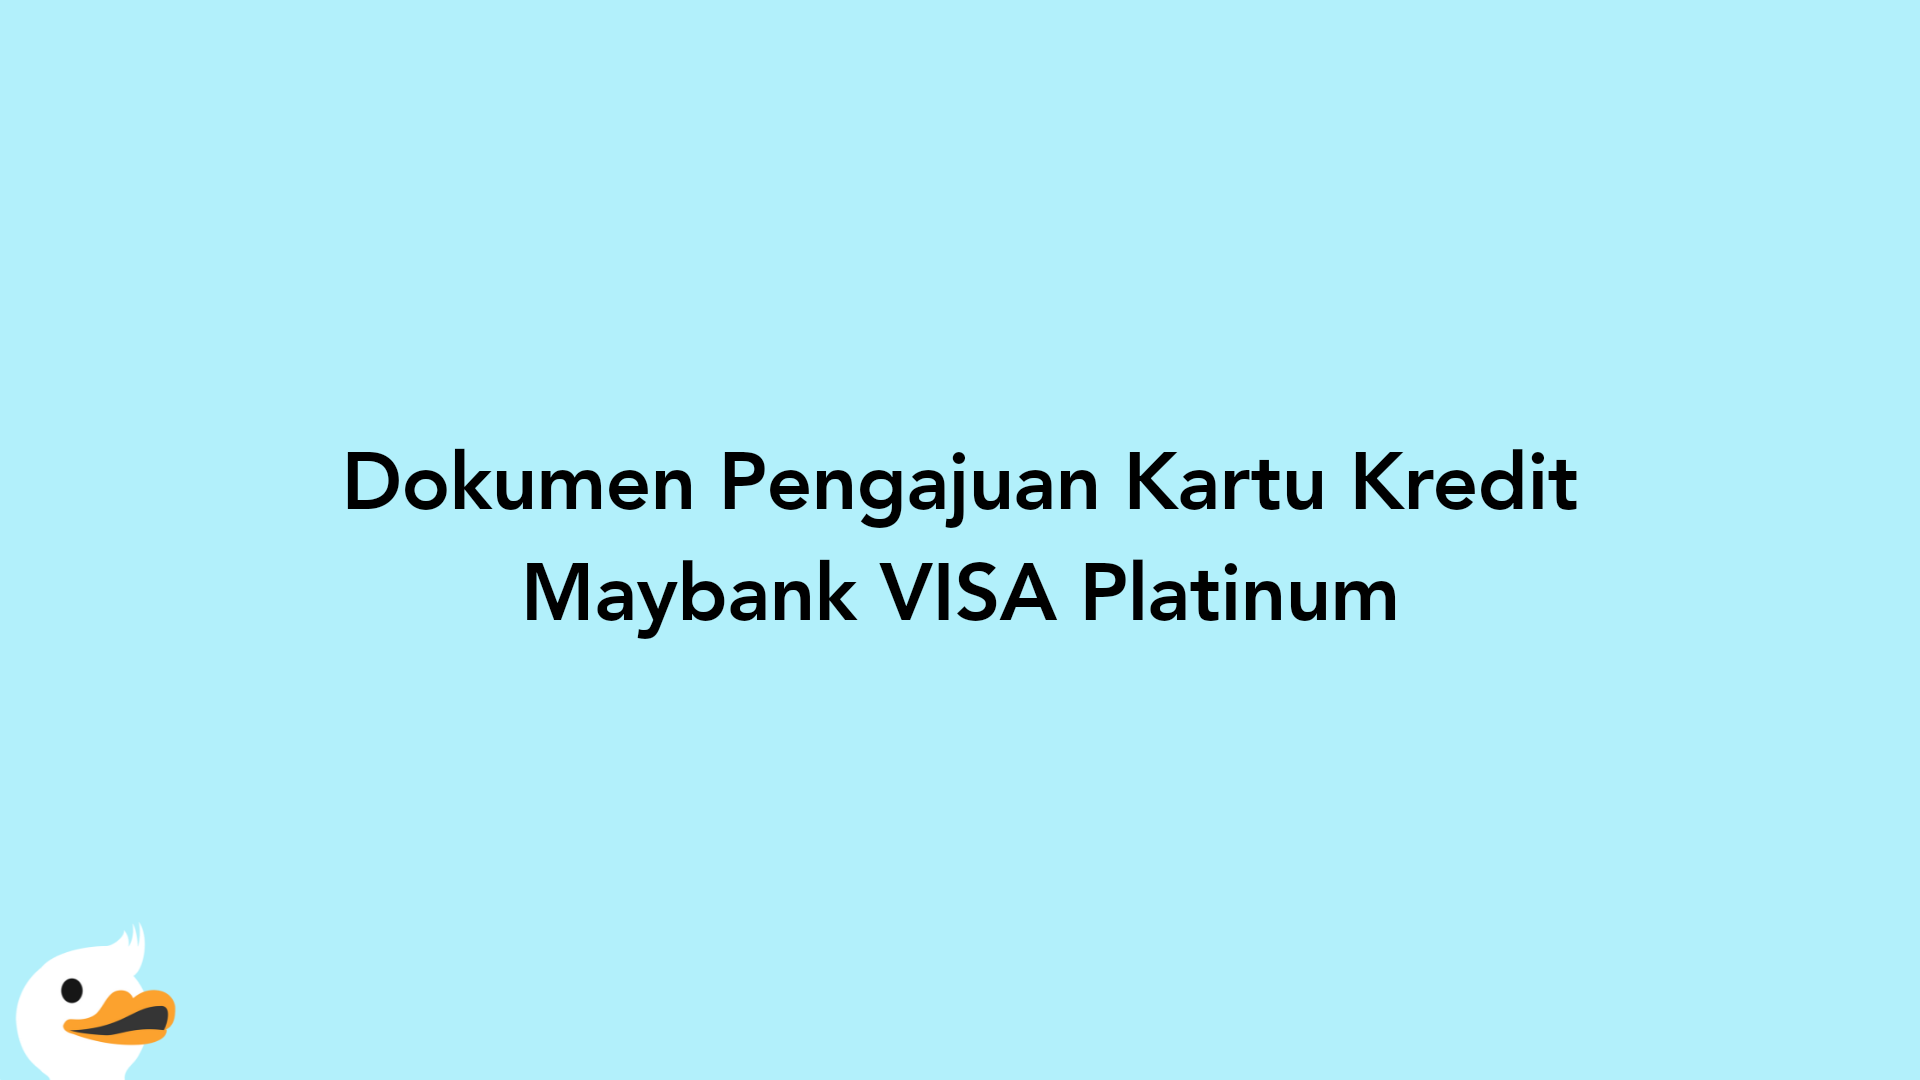 Dokumen Pengajuan Kartu Kredit Maybank VISA Platinum